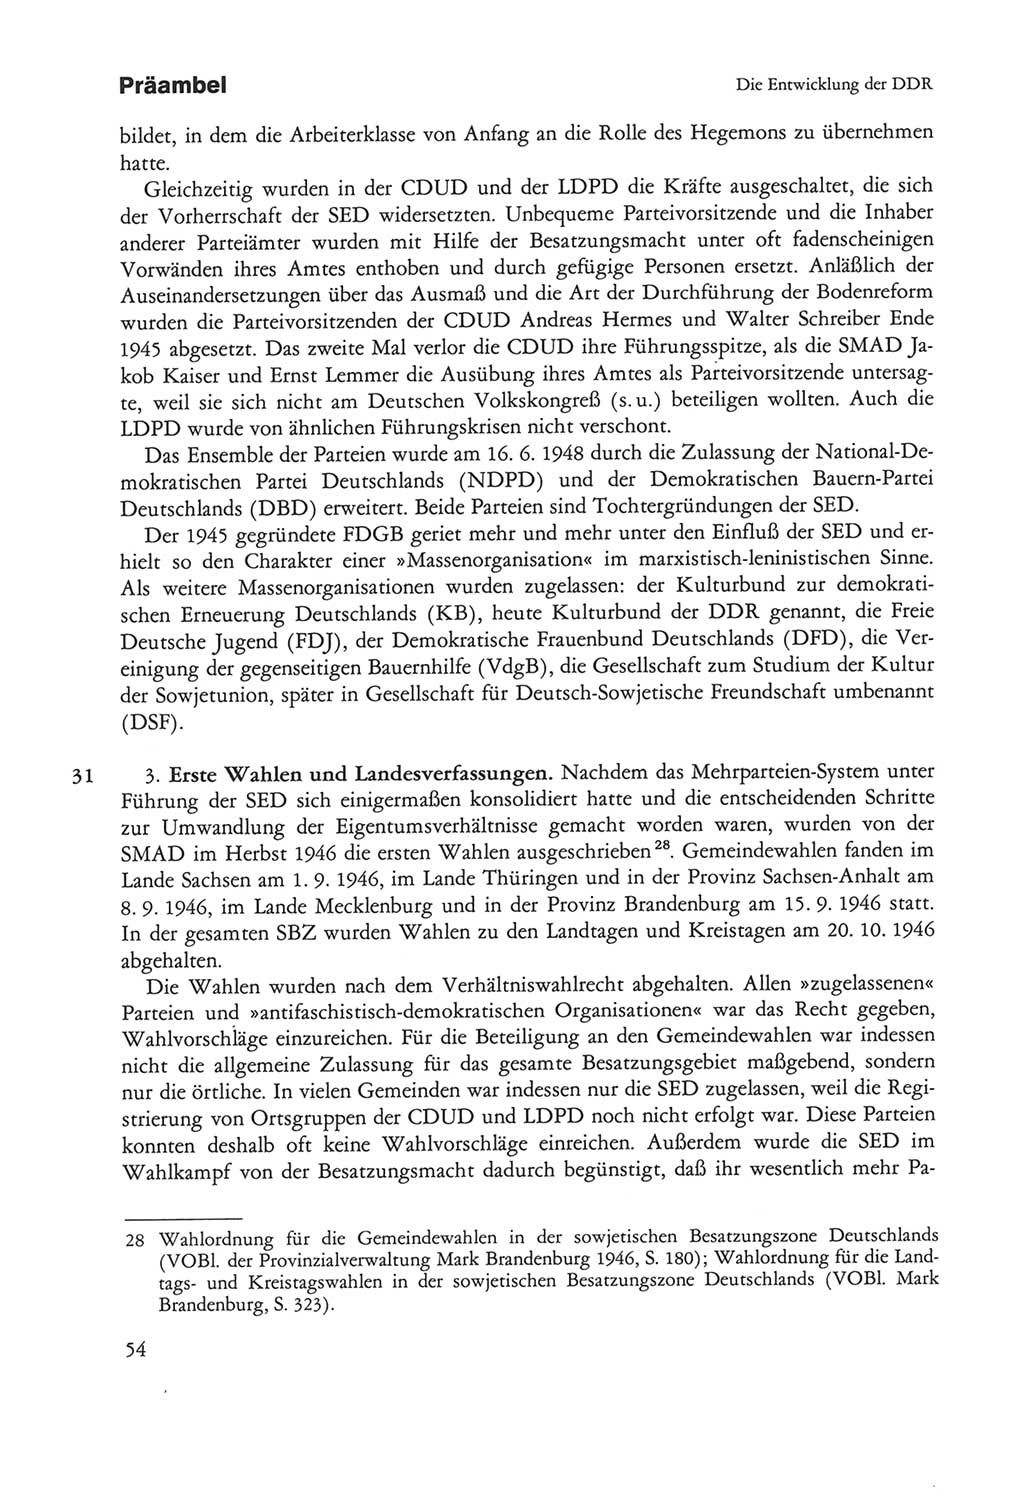 Die sozialistische Verfassung der Deutschen Demokratischen Republik (DDR), Kommentar mit einem Nachtrag 1997, Seite 54 (Soz. Verf. DDR Komm. Nachtr. 1997, S. 54)